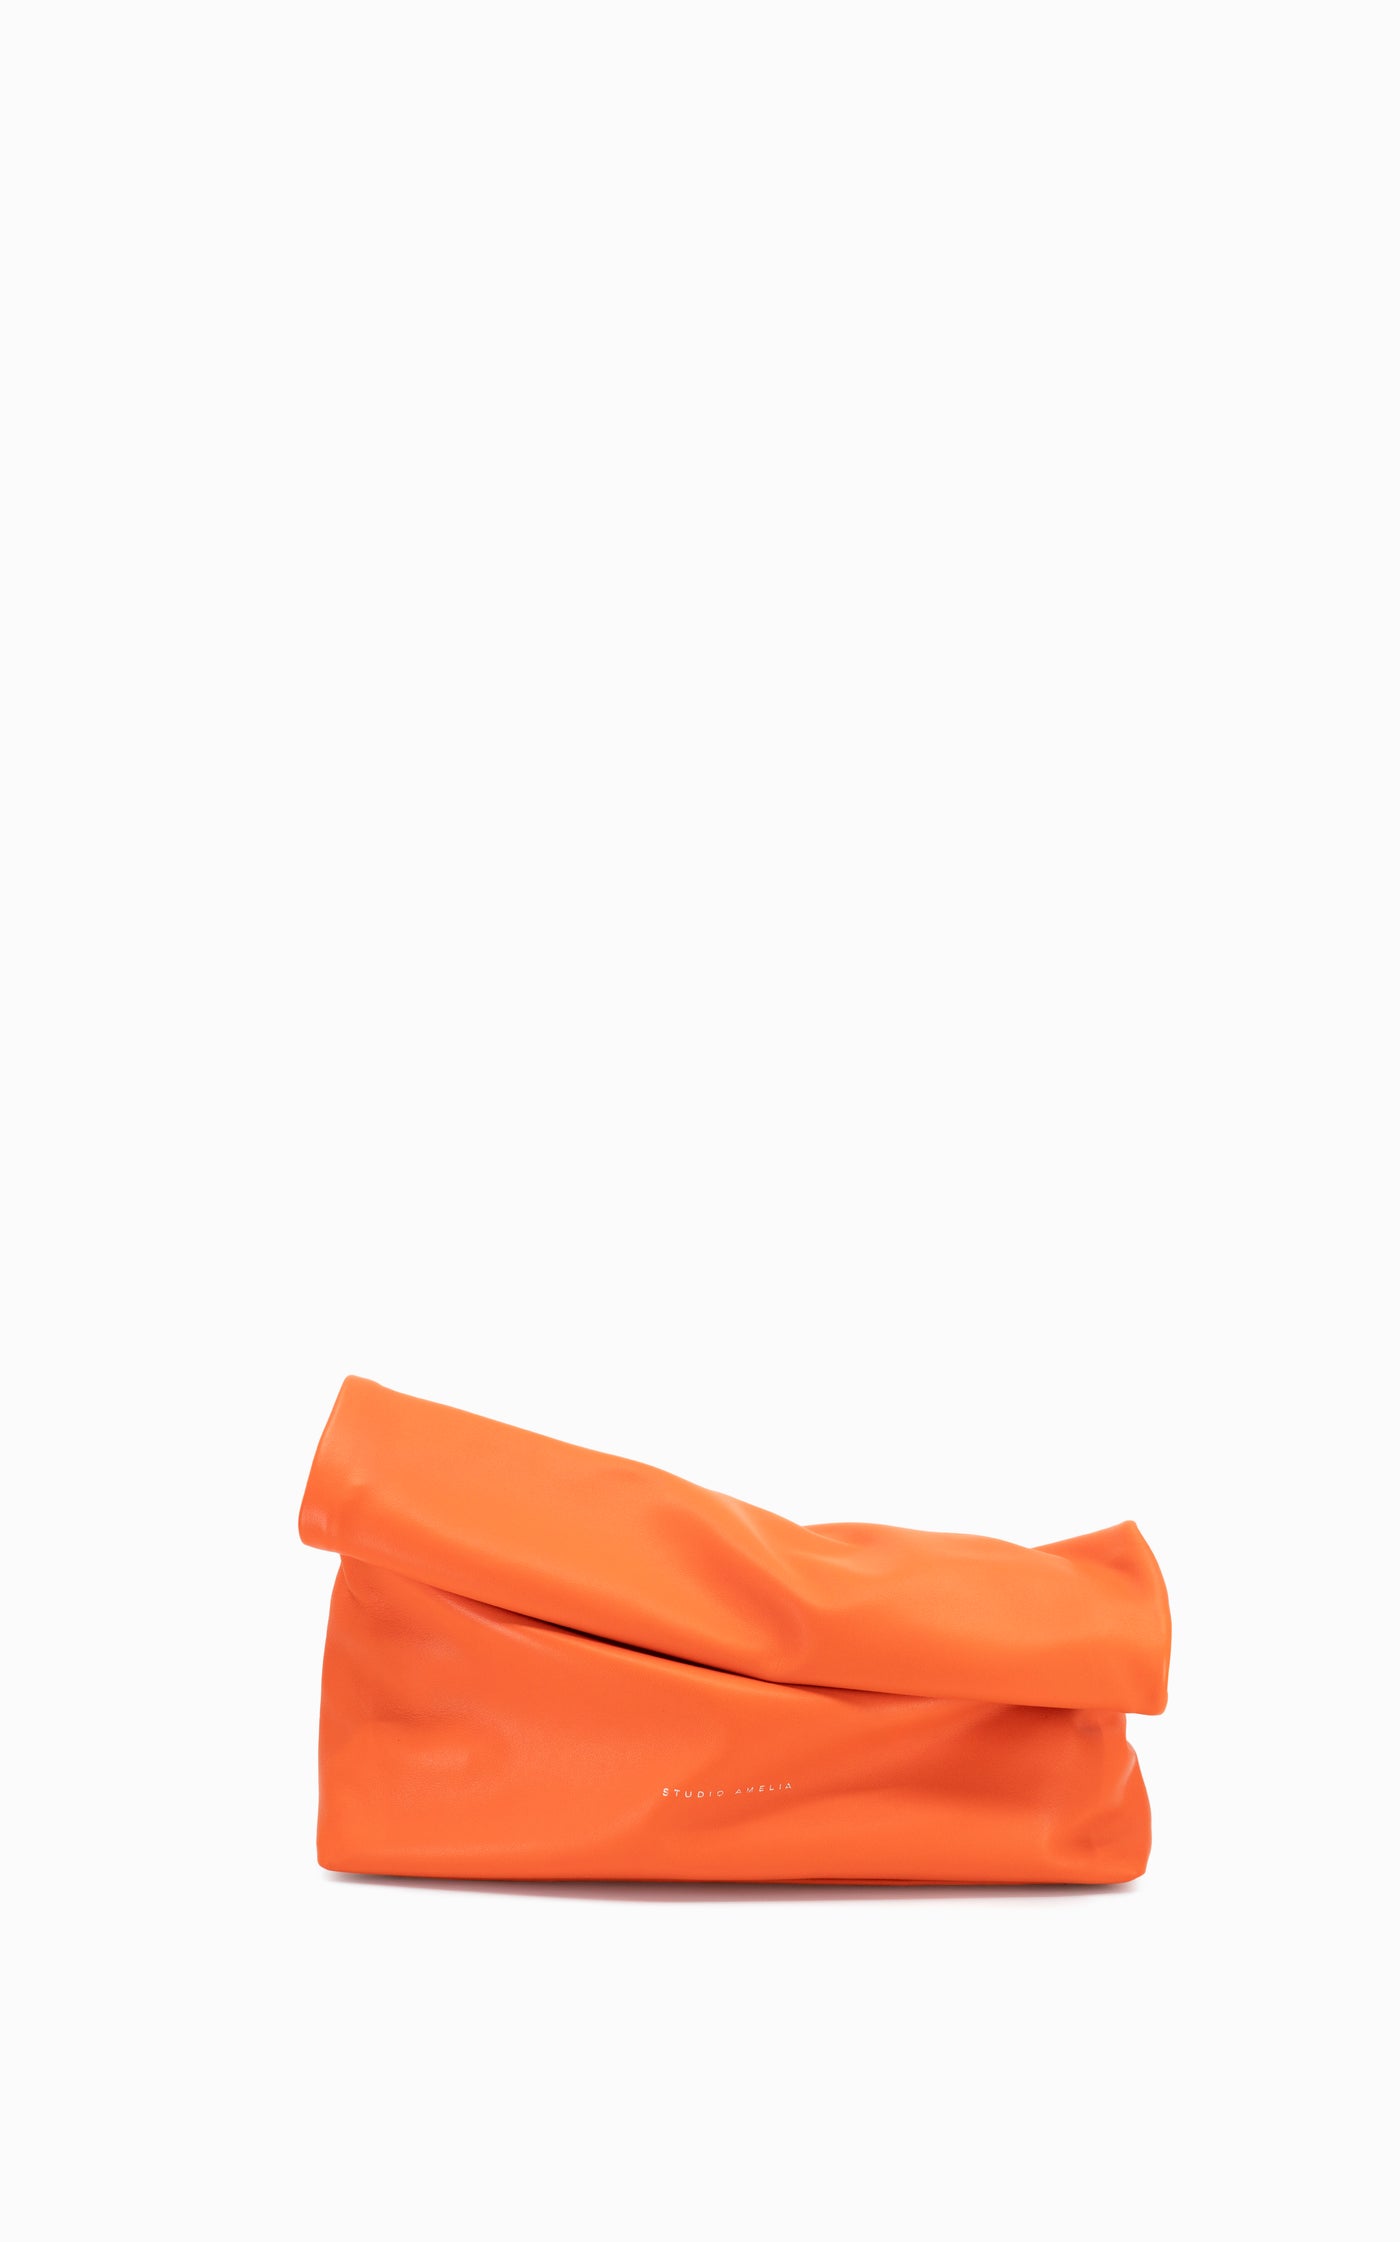 Pillow Clutch | Tangerine